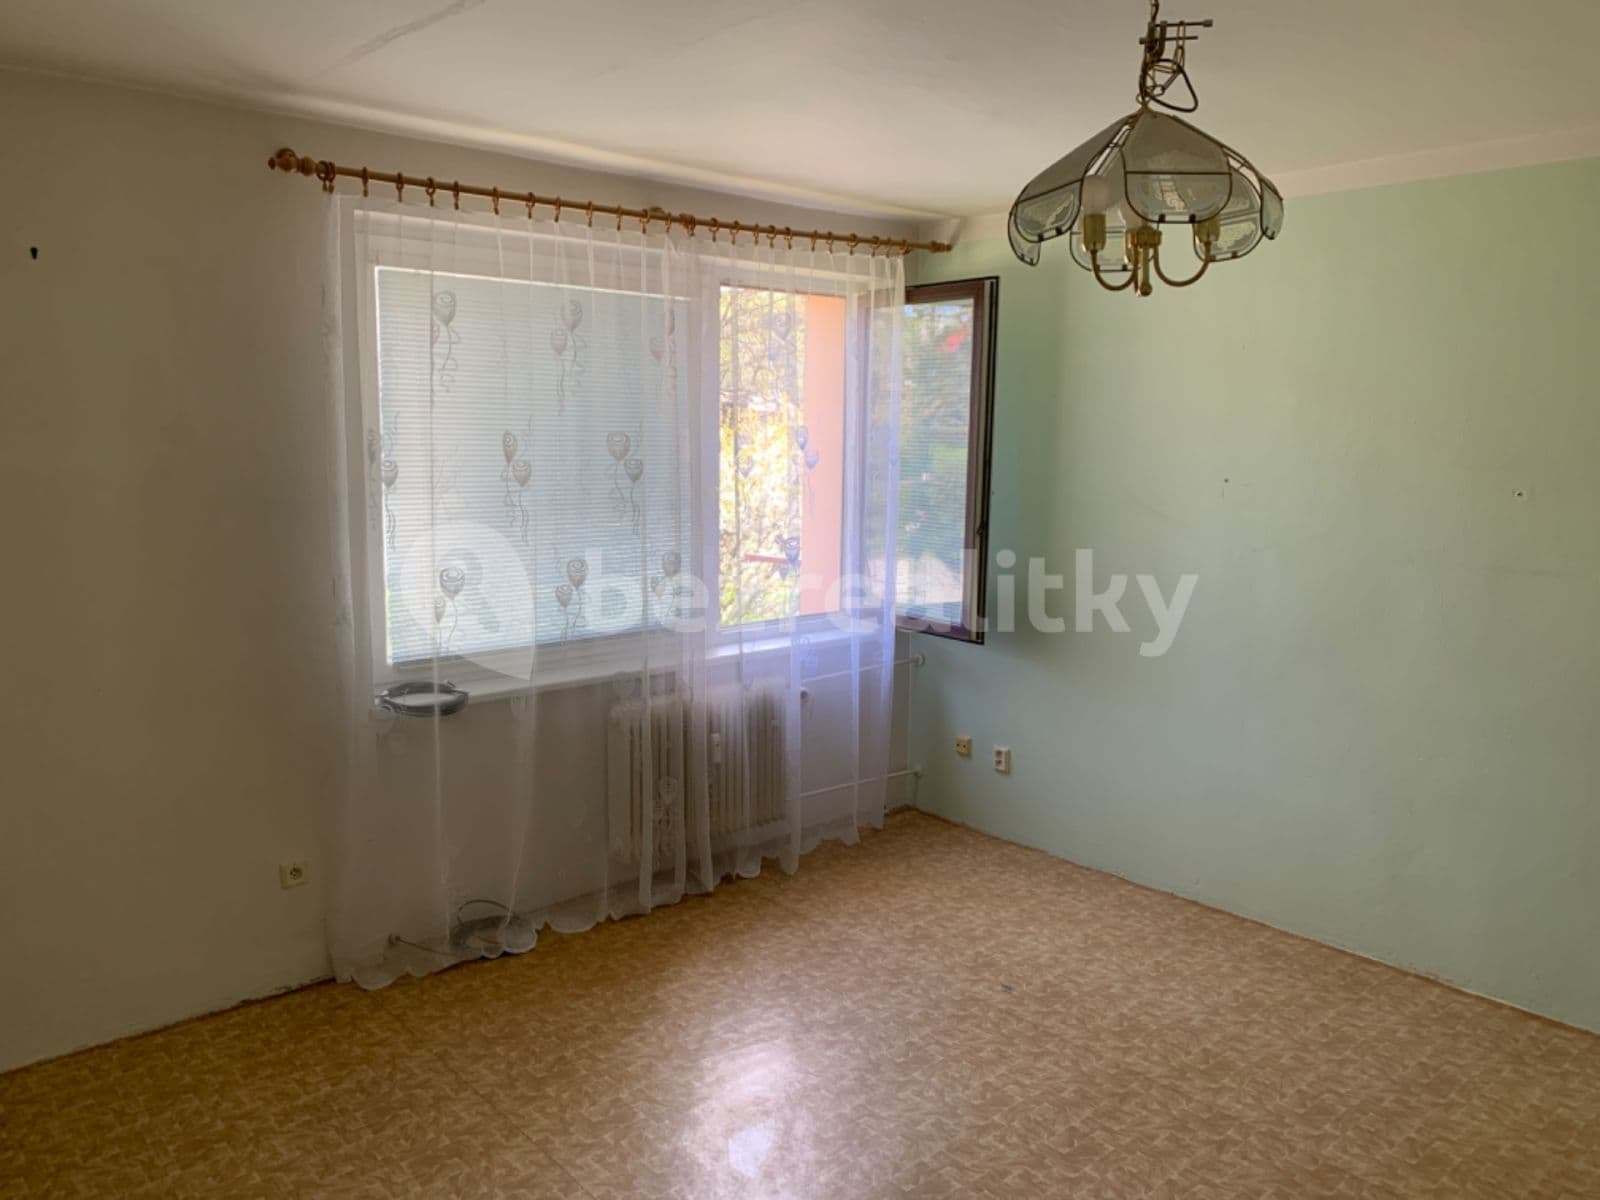 1 bedroom flat for sale, 42 m², Nádražní, Zdounky, Zlínský Region